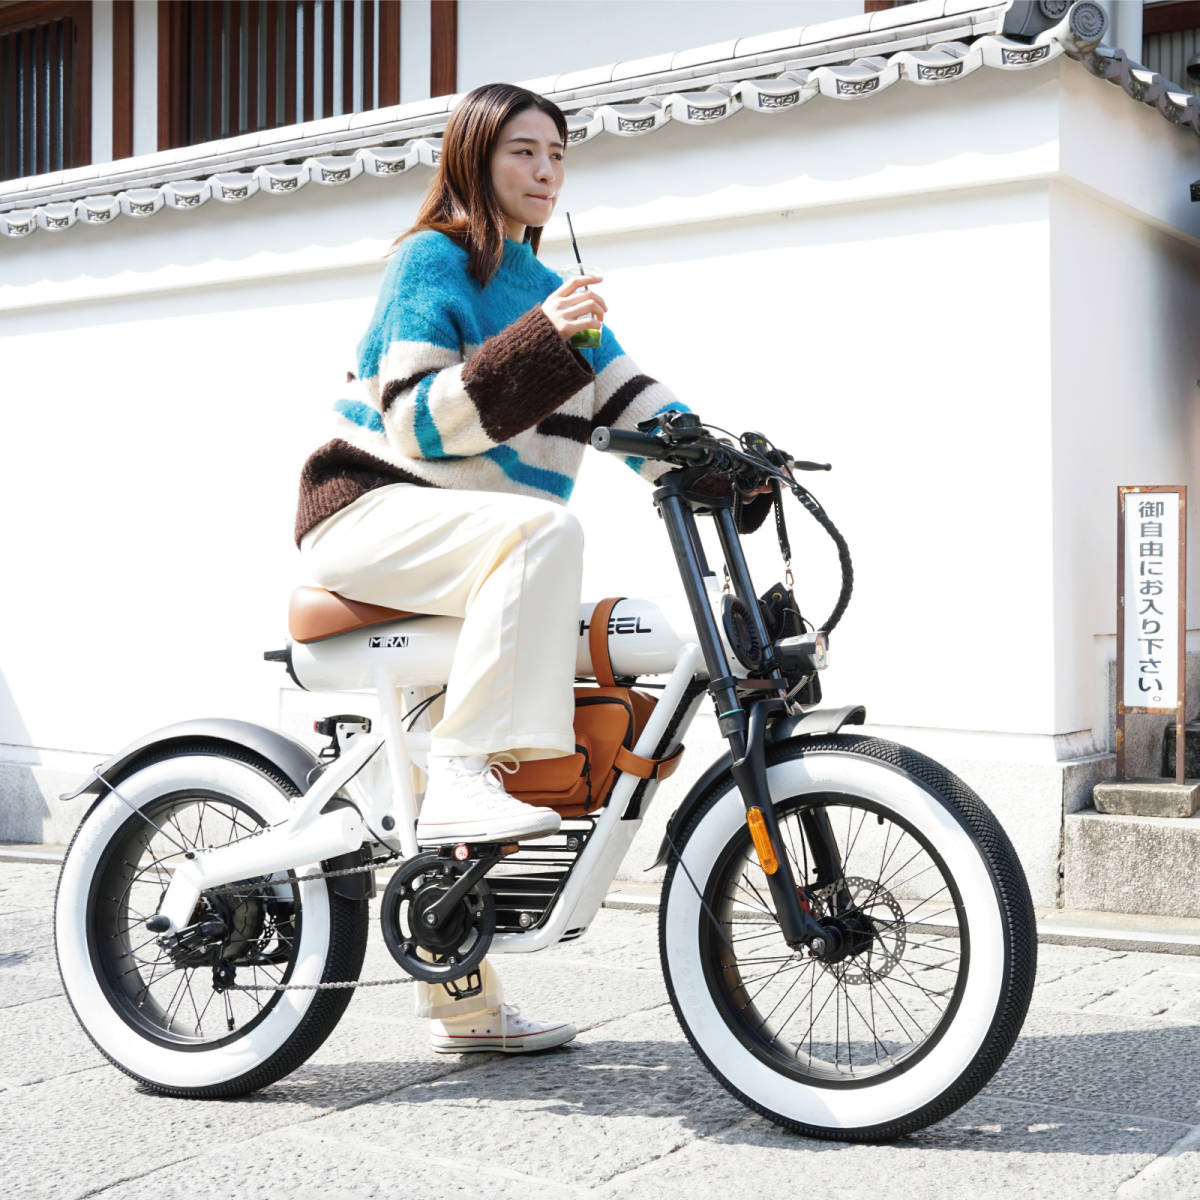  велосипед с электроприводом COSWHEEL MIRAI COMFORT белый сборка settled * полное обслуживание товар префектура Аичи внутри готовый автомобиль .